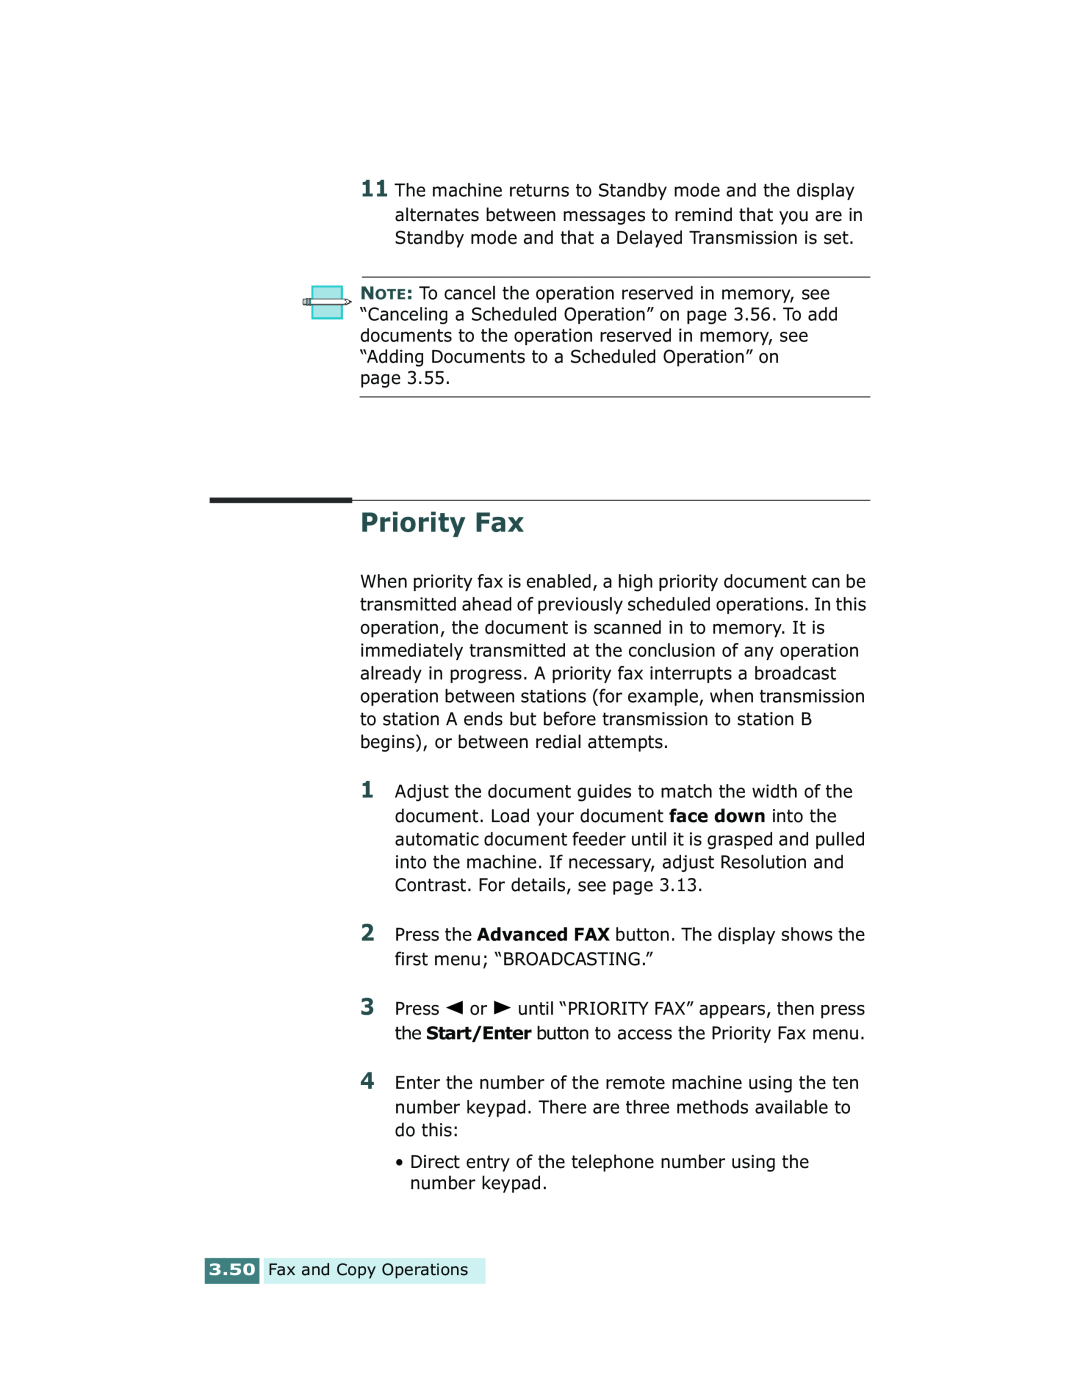 Xerox Pro 580 manual Priority Fax 